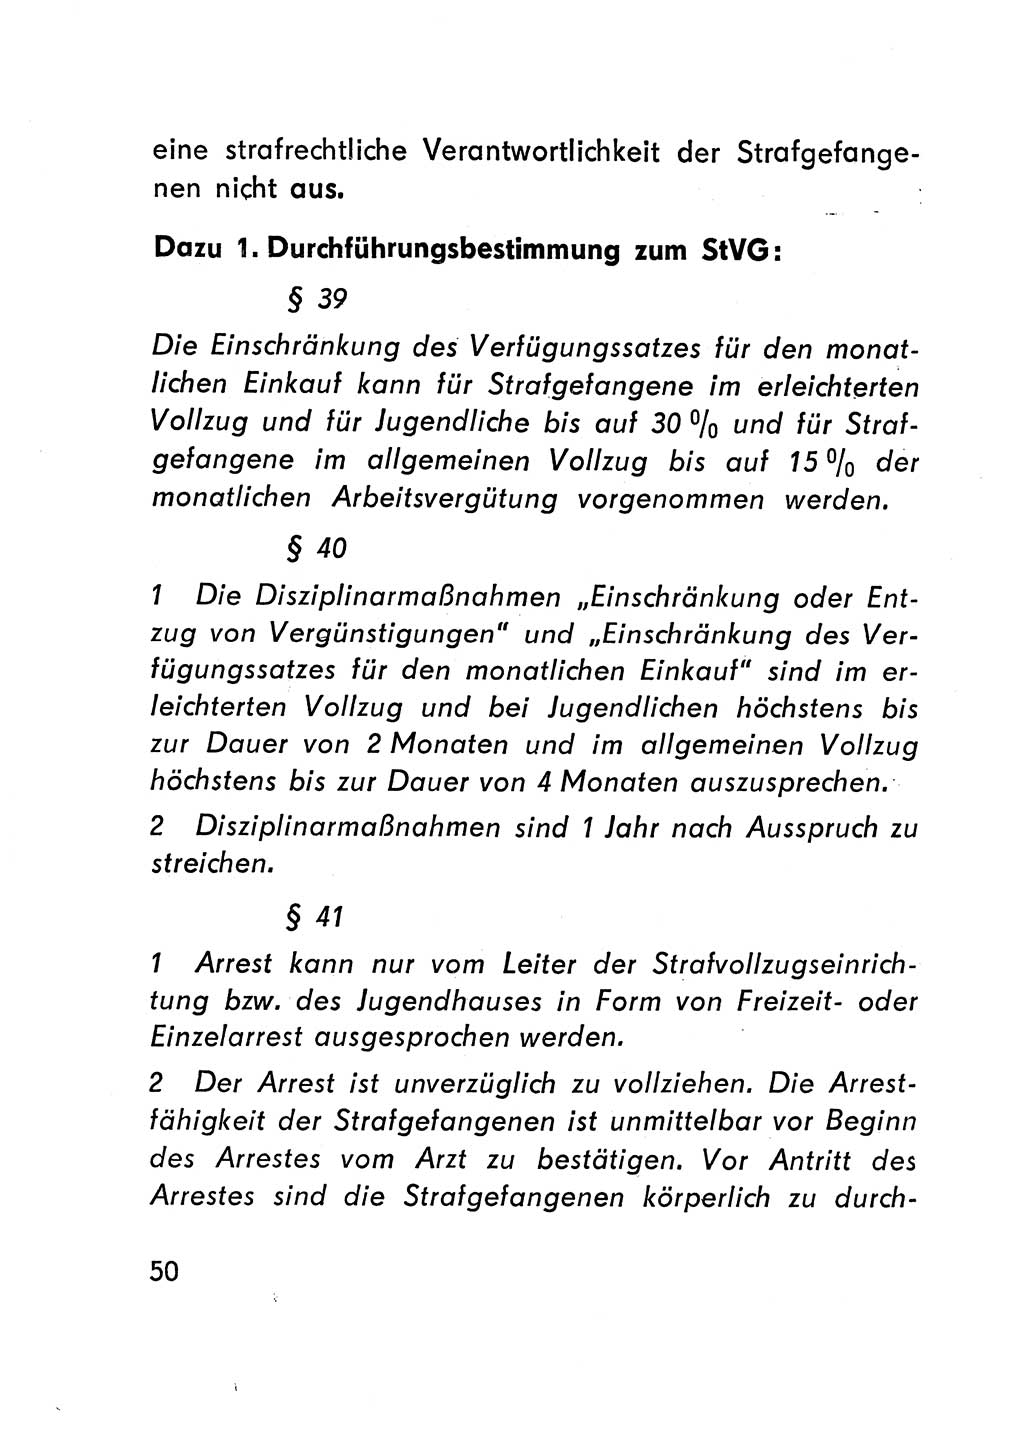 Gesetz über den Vollzug der Strafen mit Freiheitsentzug (Strafvollzugsgesetz) - StVG - [Deutsche Demokratische Republik (DDR)] 1977, Seite 50 (StVG DDR 1977, S. 50)